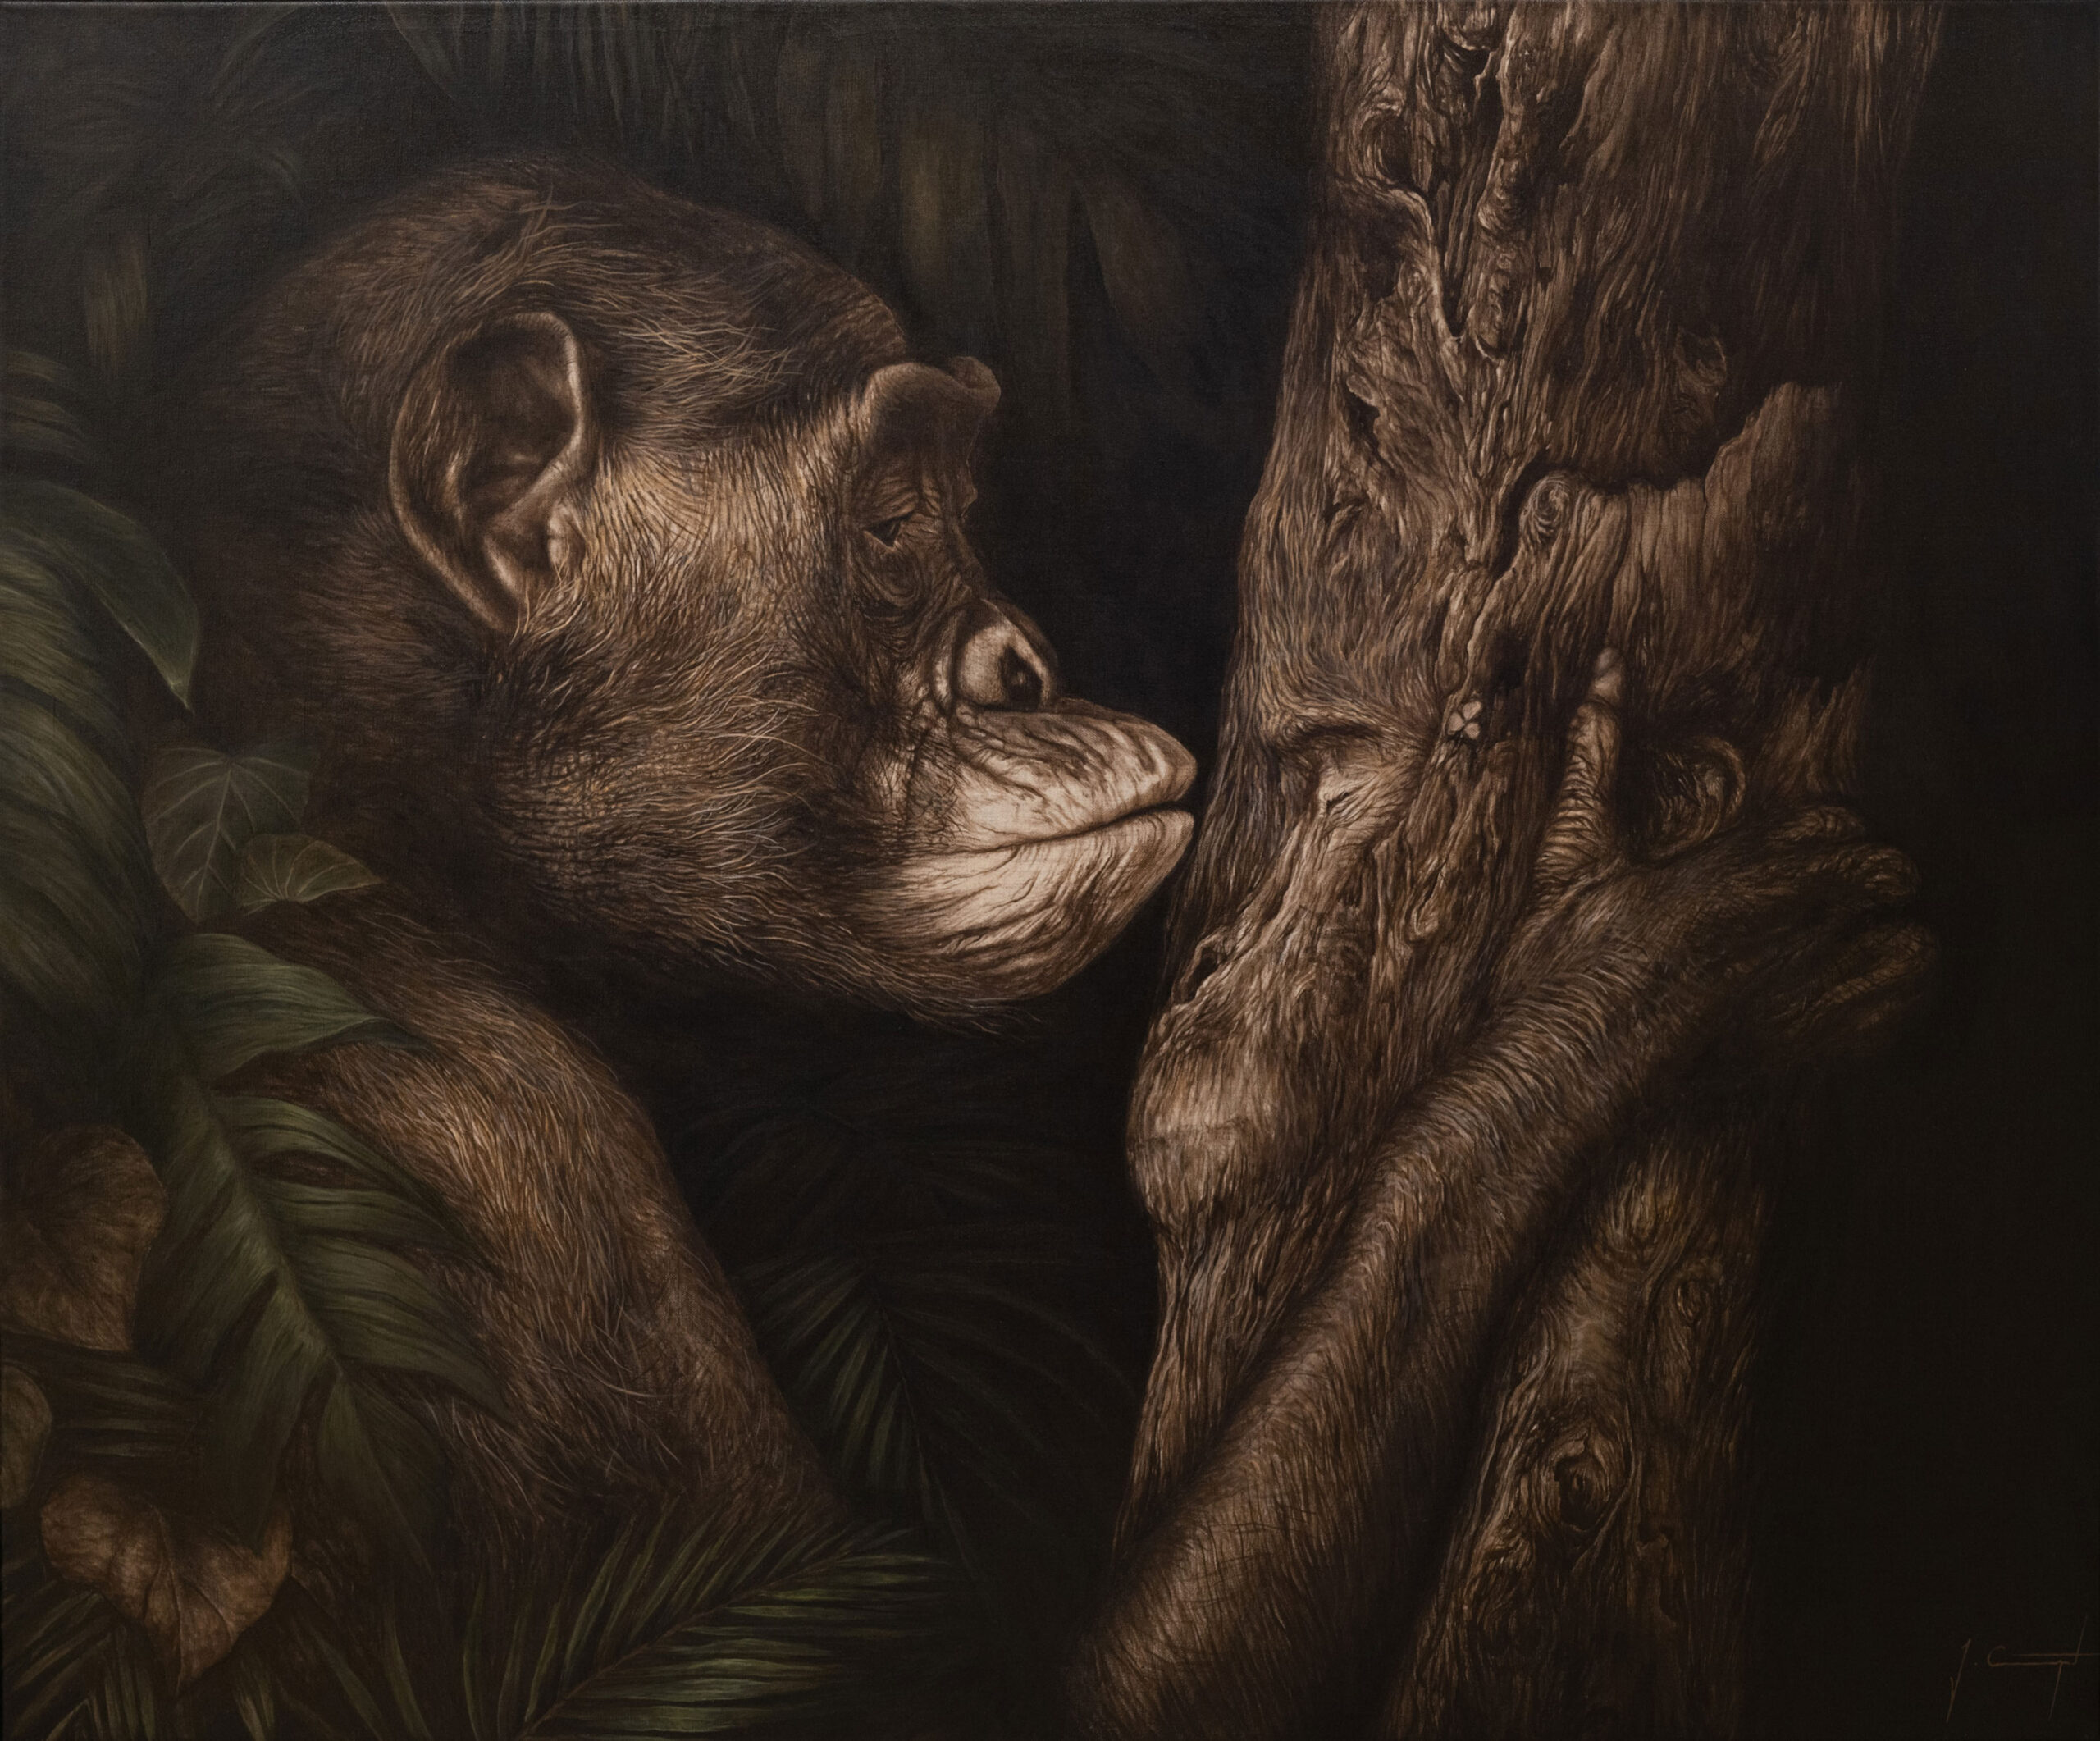 Gemälde. Urwaldhintergrund, ein Bonobo umfasst einen Baum und küsst mit geschlossenen Augen das dort eingearbeitete Porträt eines zweiten Bonobos.